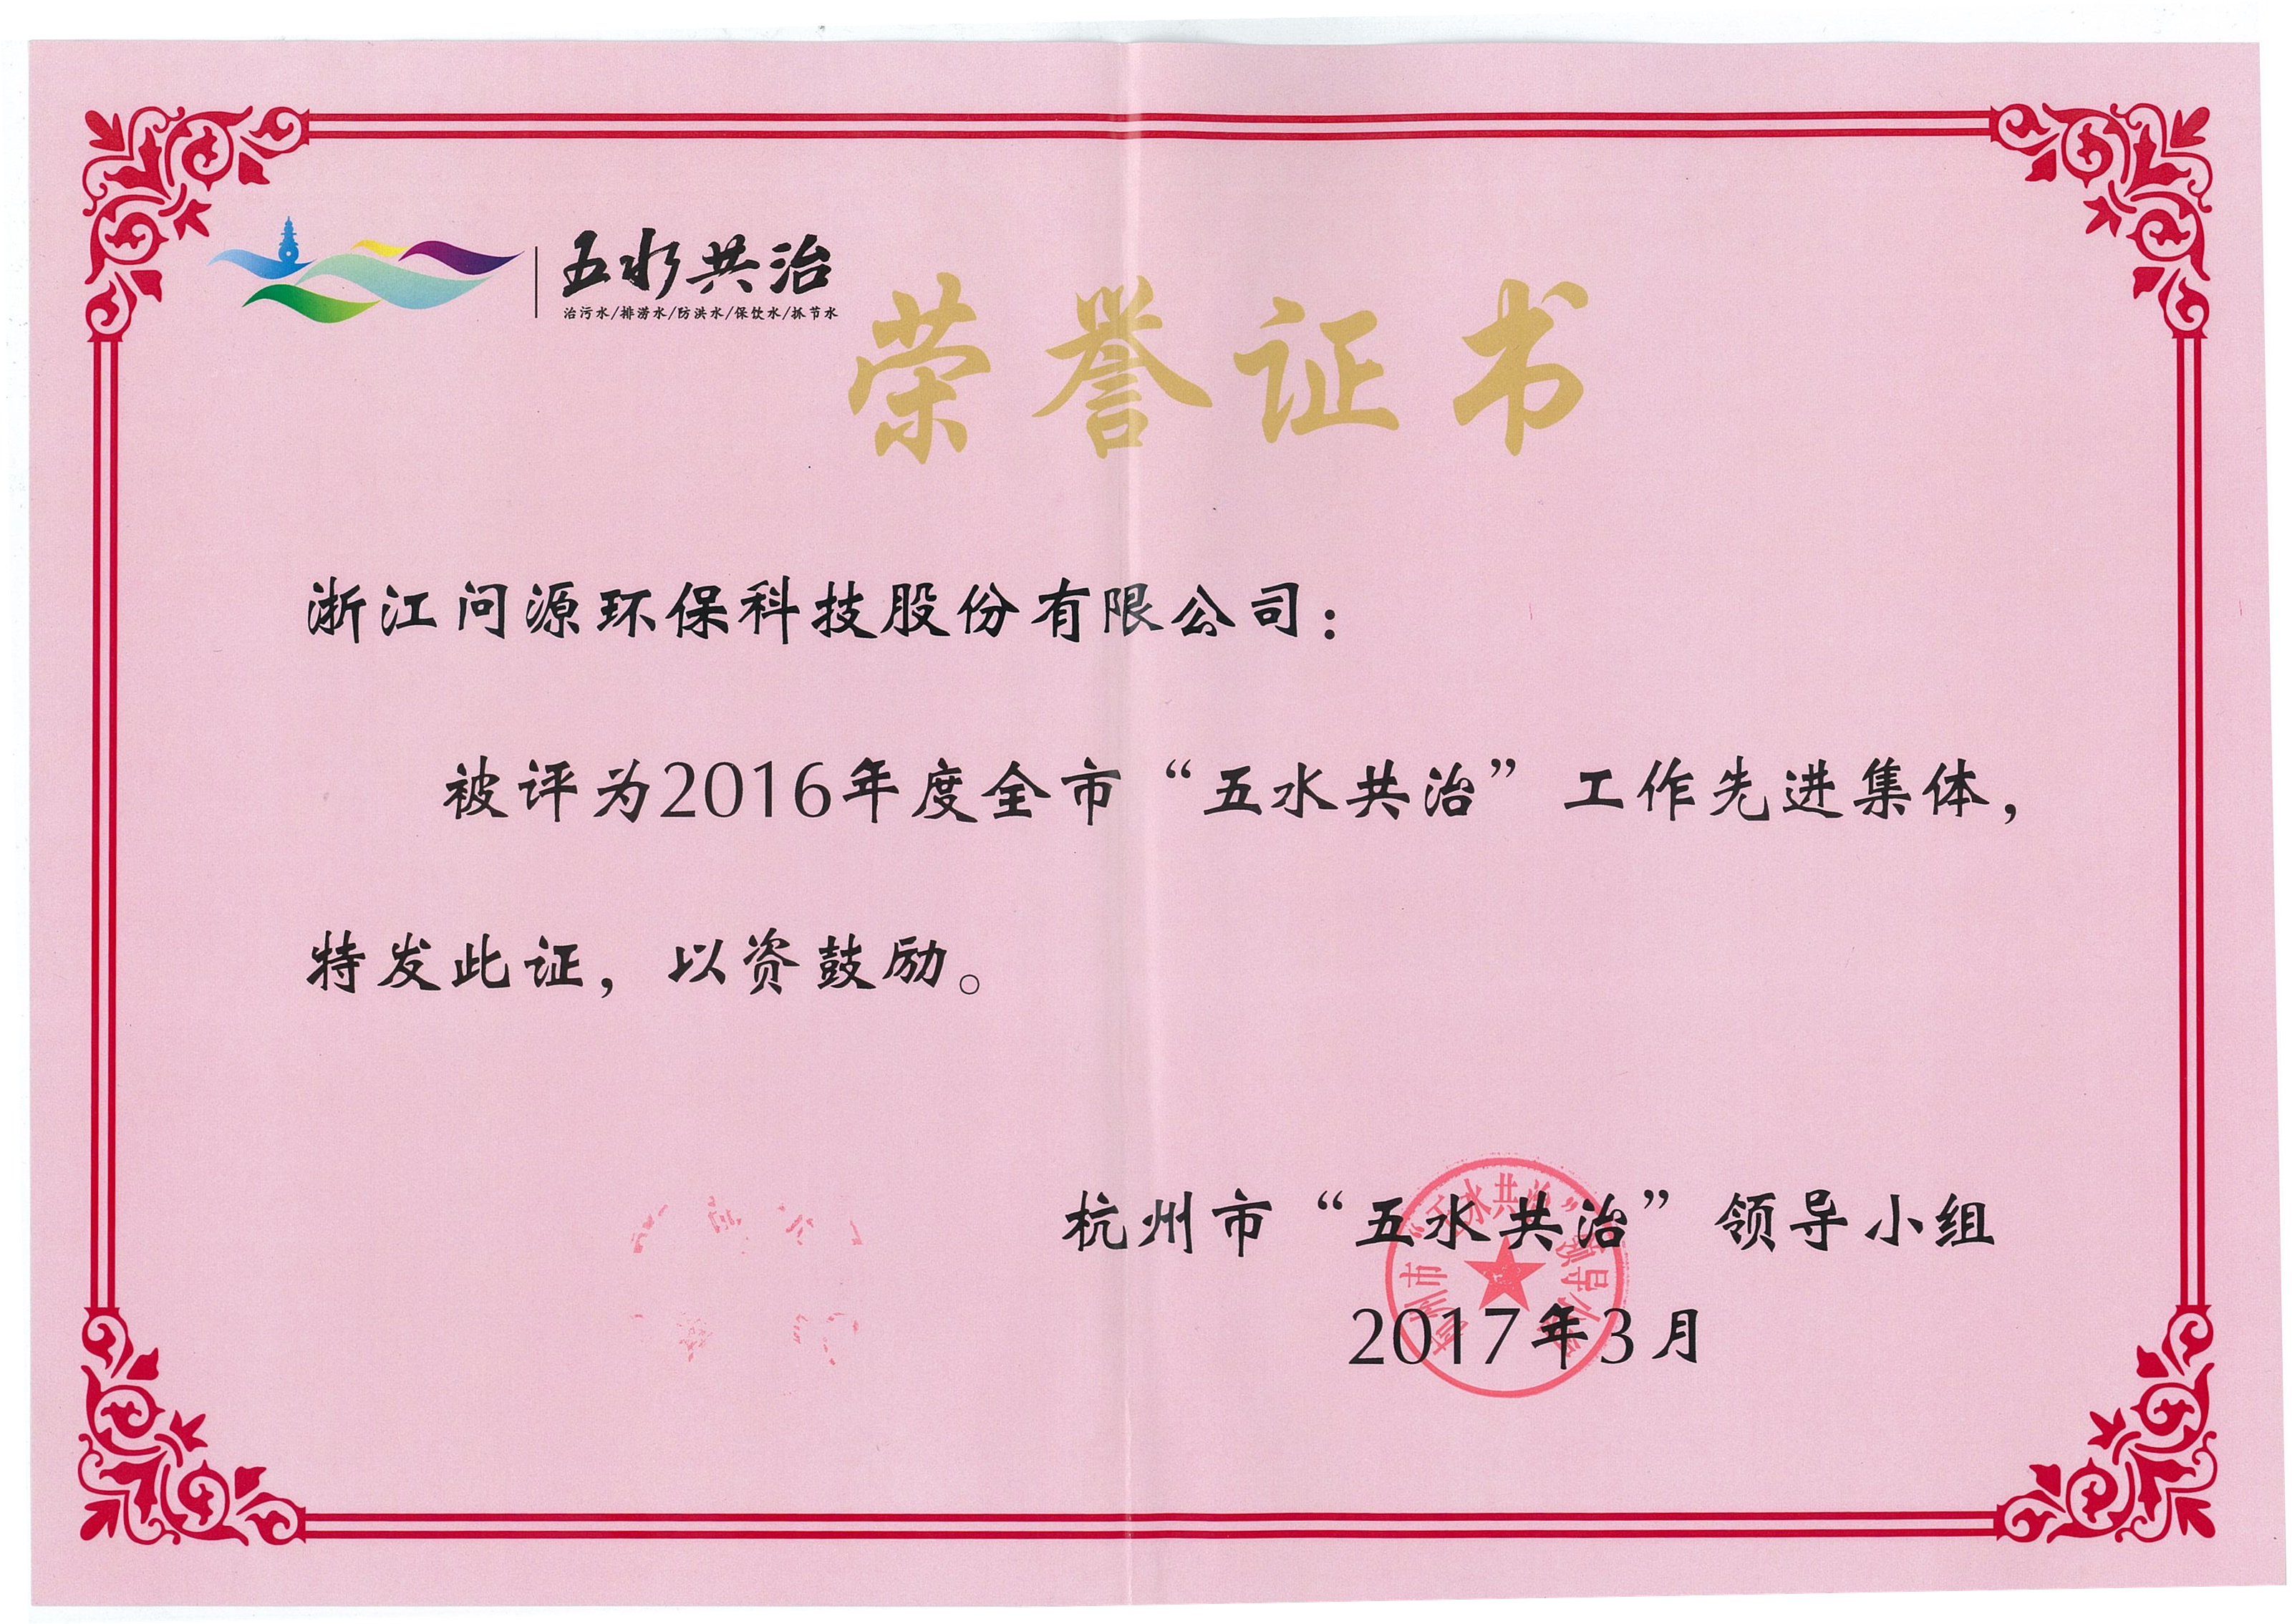 2016年度杭州市“五水共治”工作先进集体